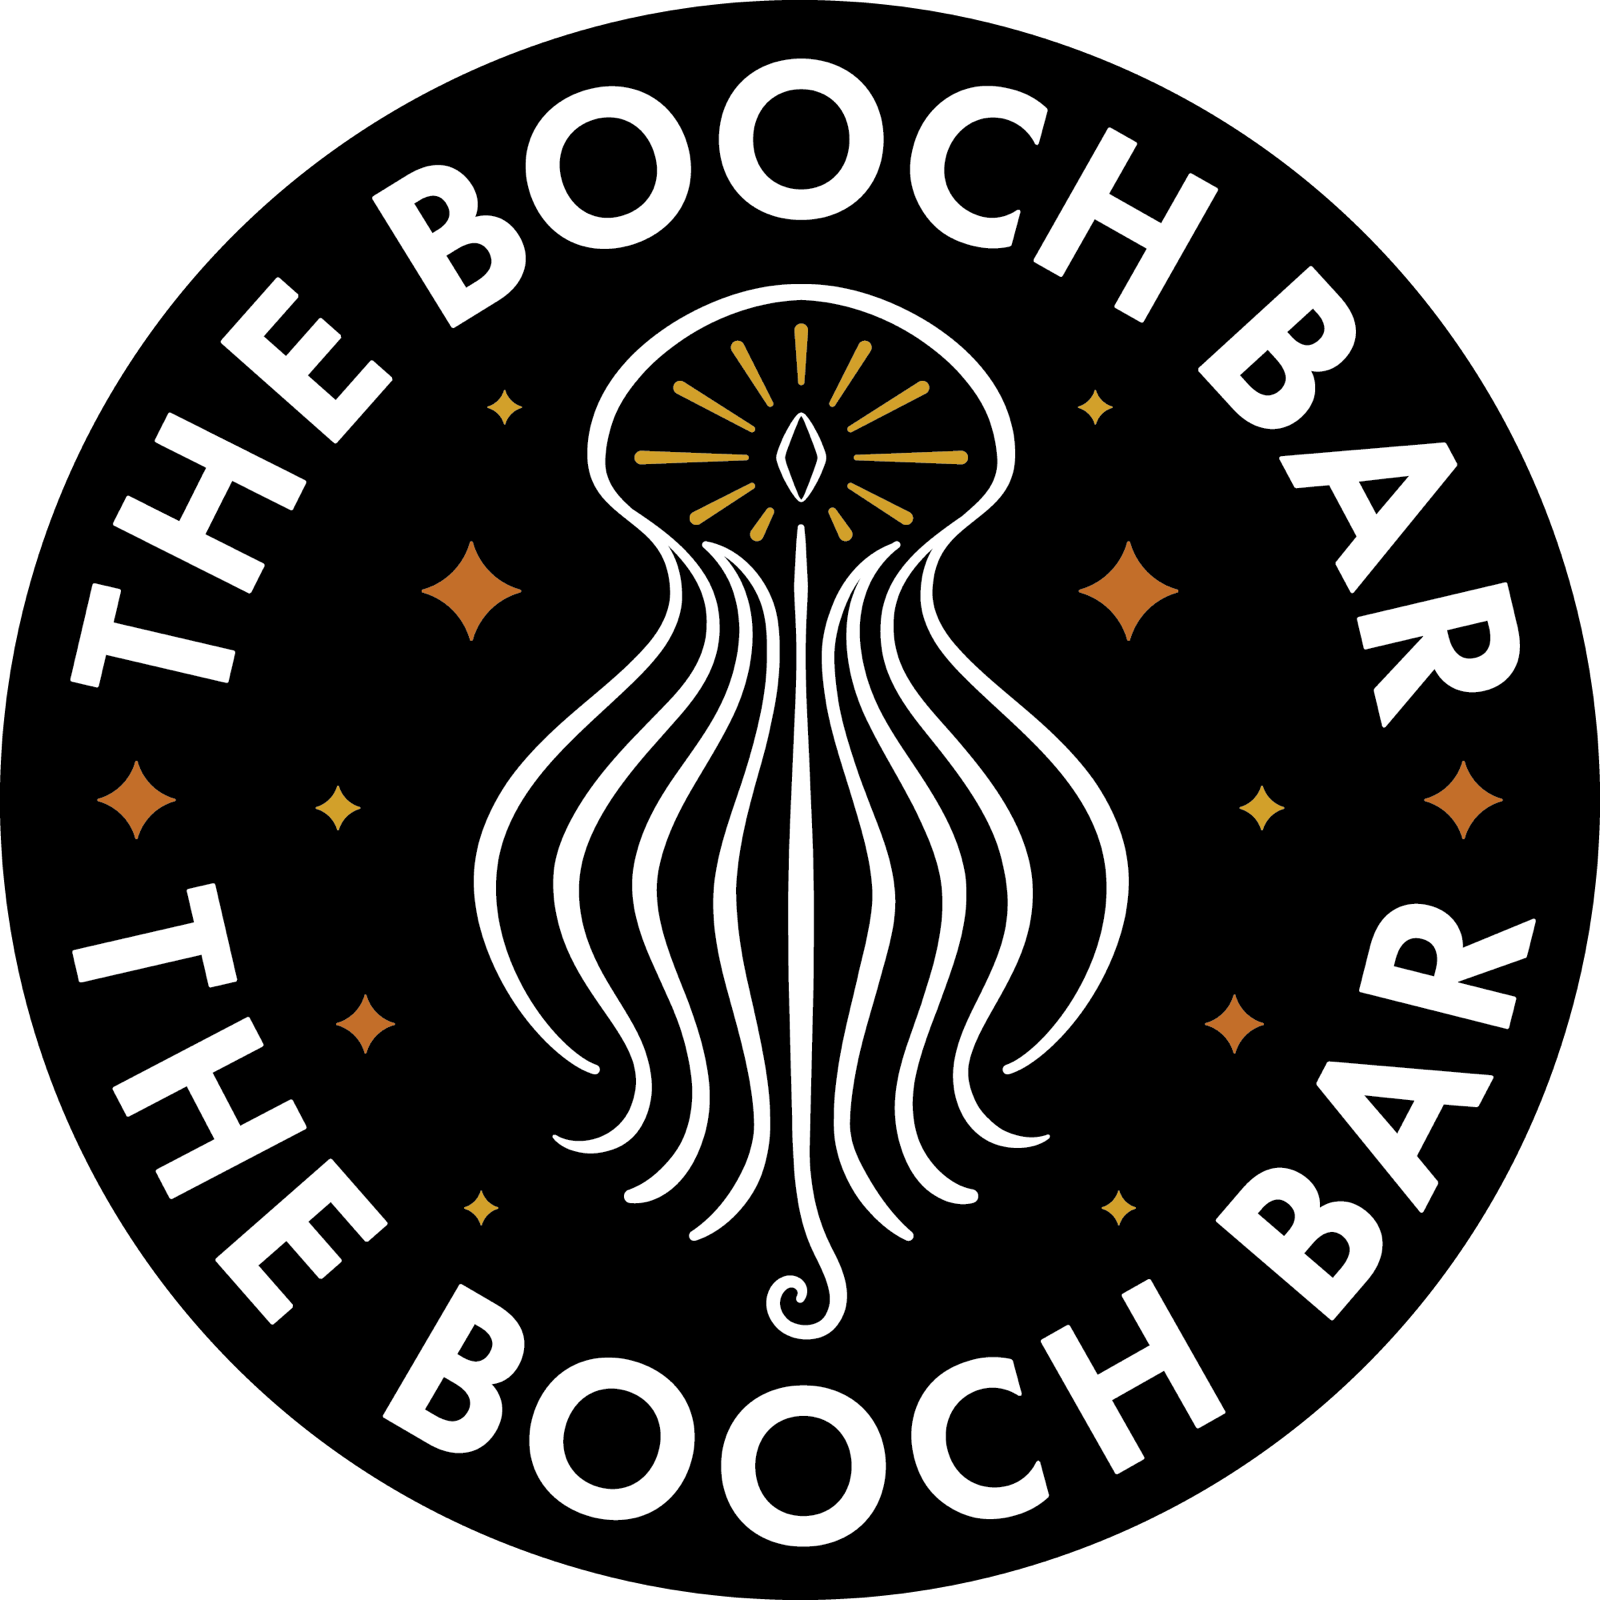 The Booch Bar Hilo